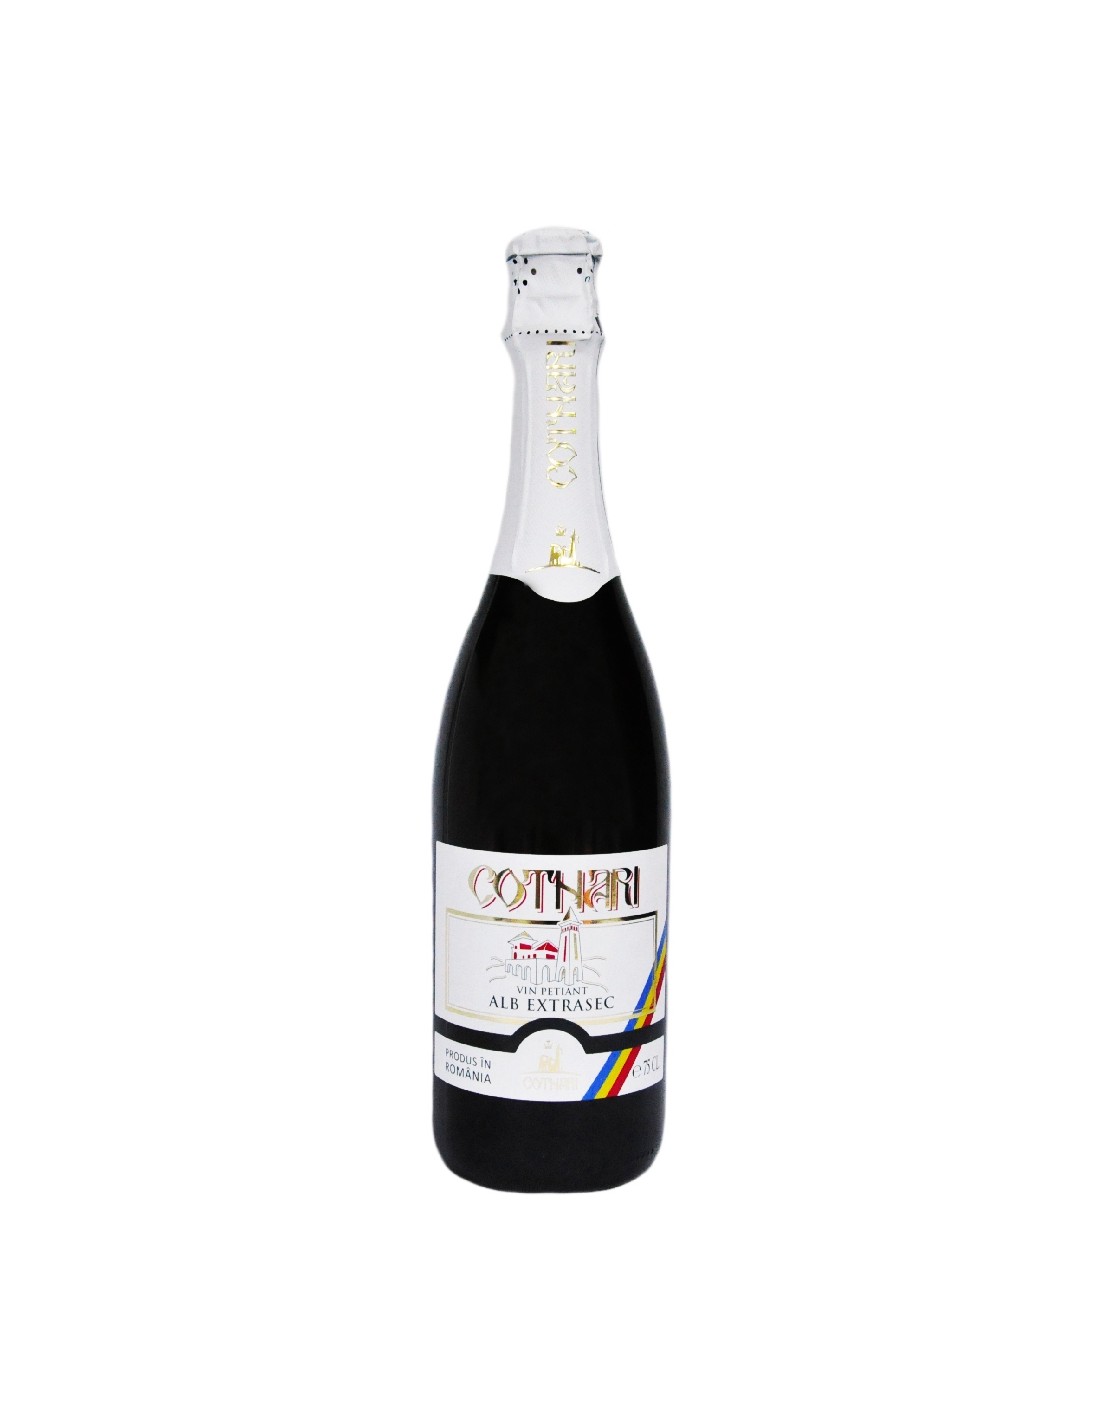 Vin petiant alb extrasec Cotnari, 11% alc., 0.75L, Romania alcooldiscount.ro